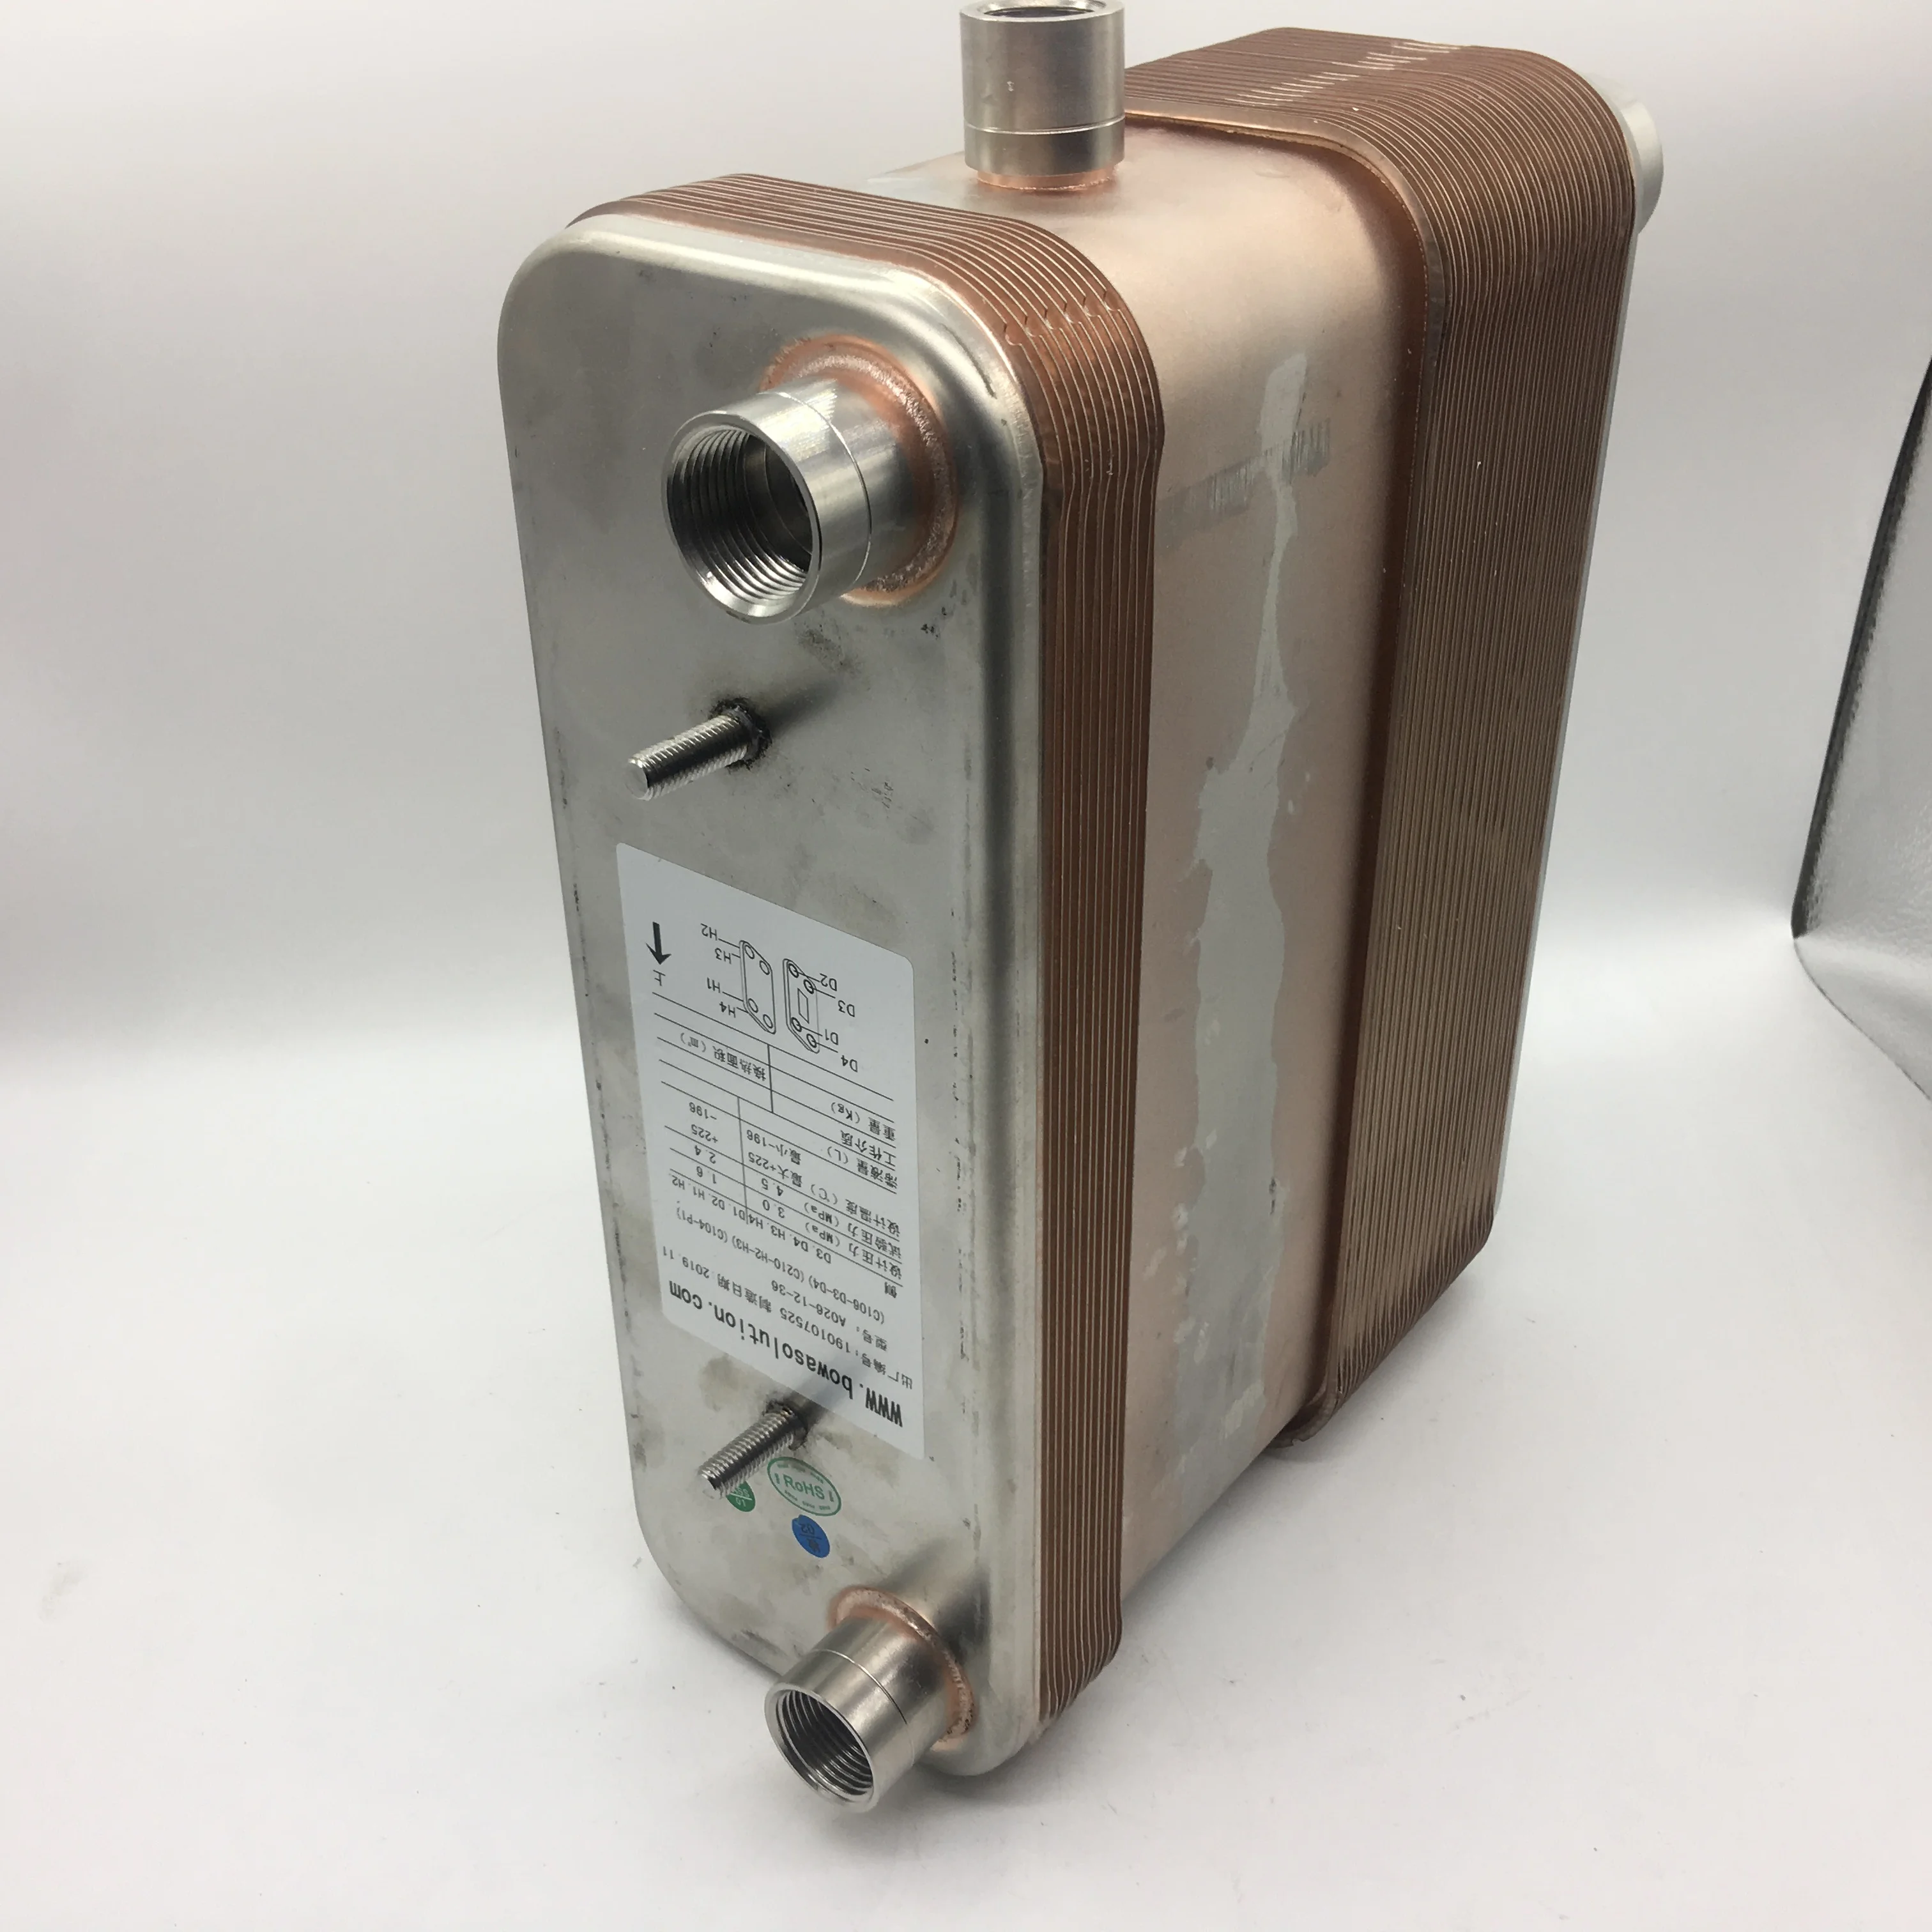 4.2Nm3/мин 3-в-1 пластиной с сепаратором и предварительный охладитель выполнен в виде компактный размер испарителя dehumifier из пары или воздушные фильтры